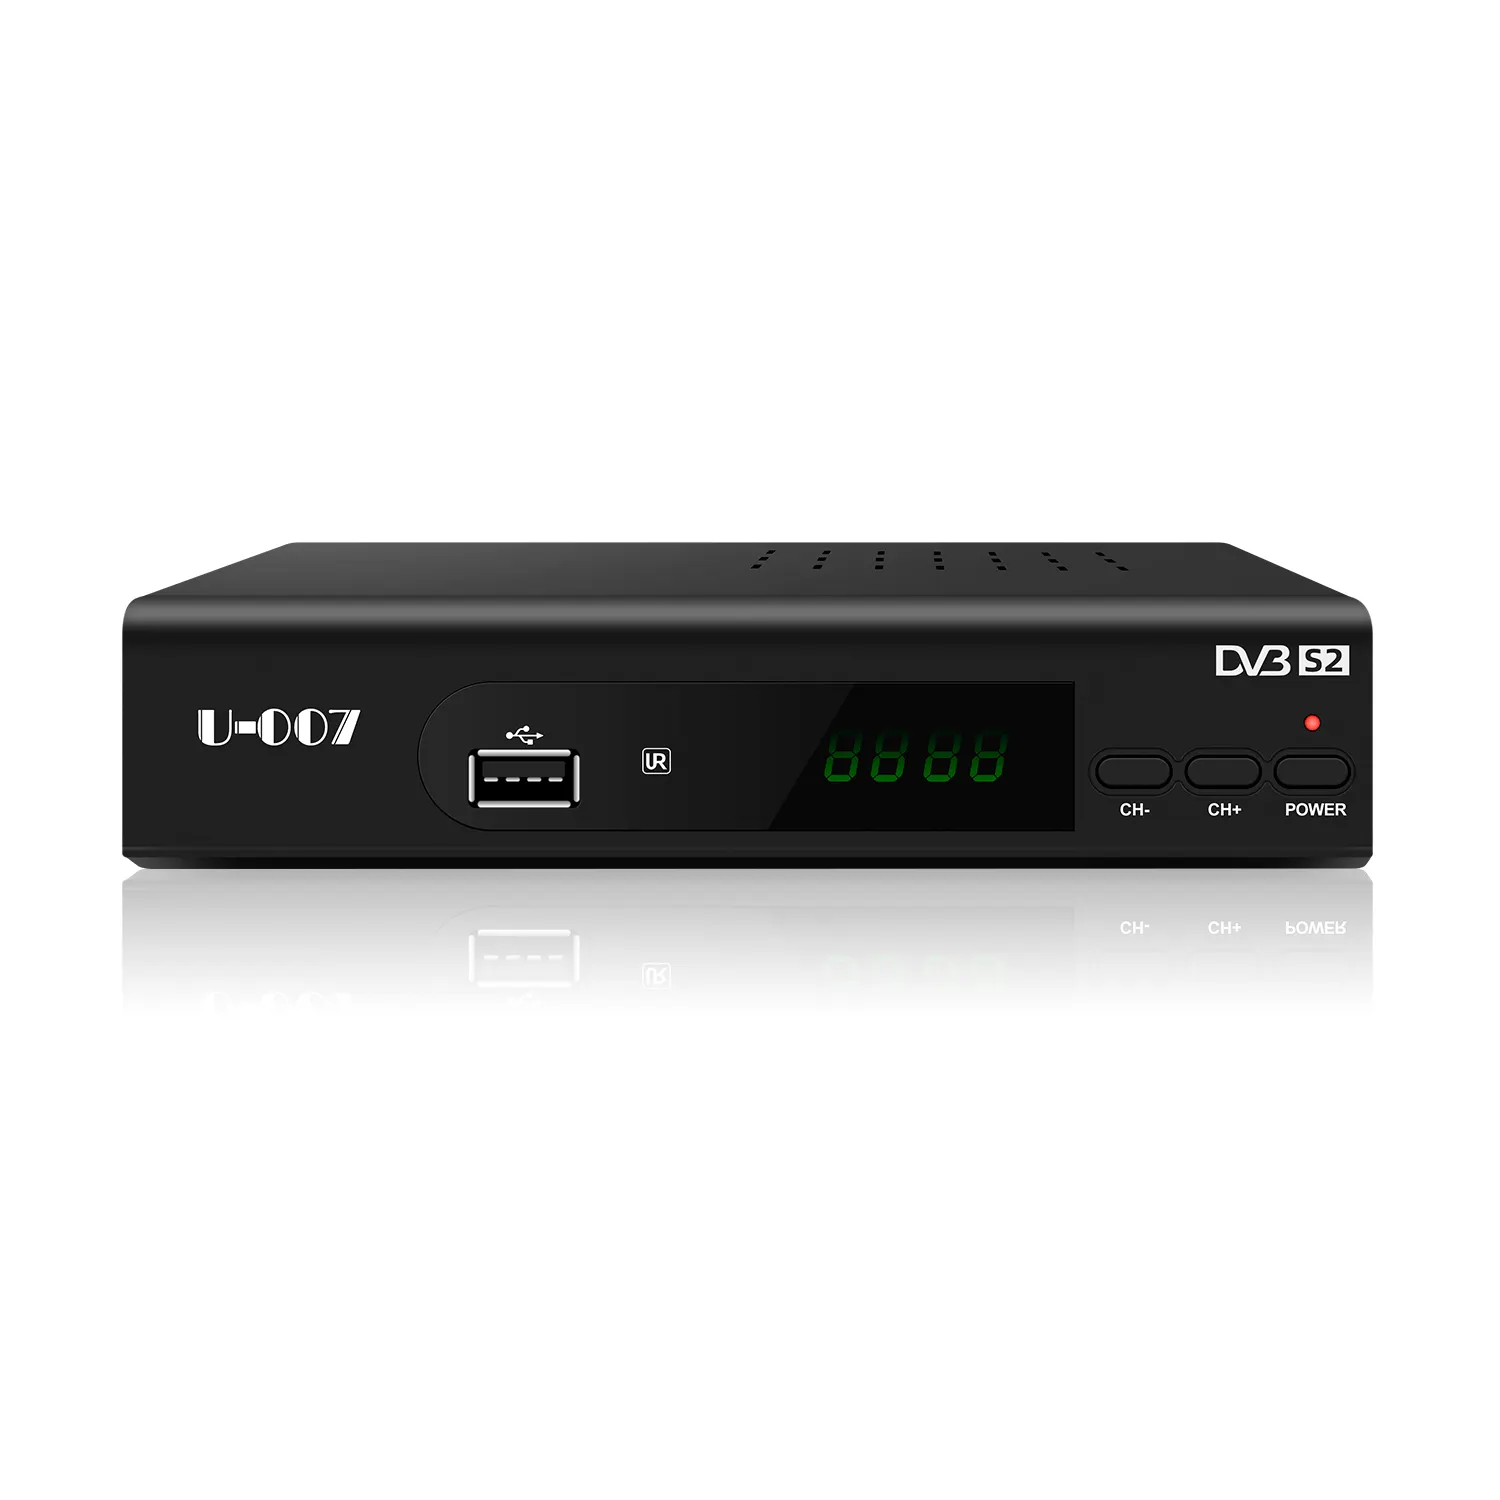 JUNUO fabricant Dvb-s2 1080p Tv Box décodeur hd multi stream free to air récepteur Satellite numérique